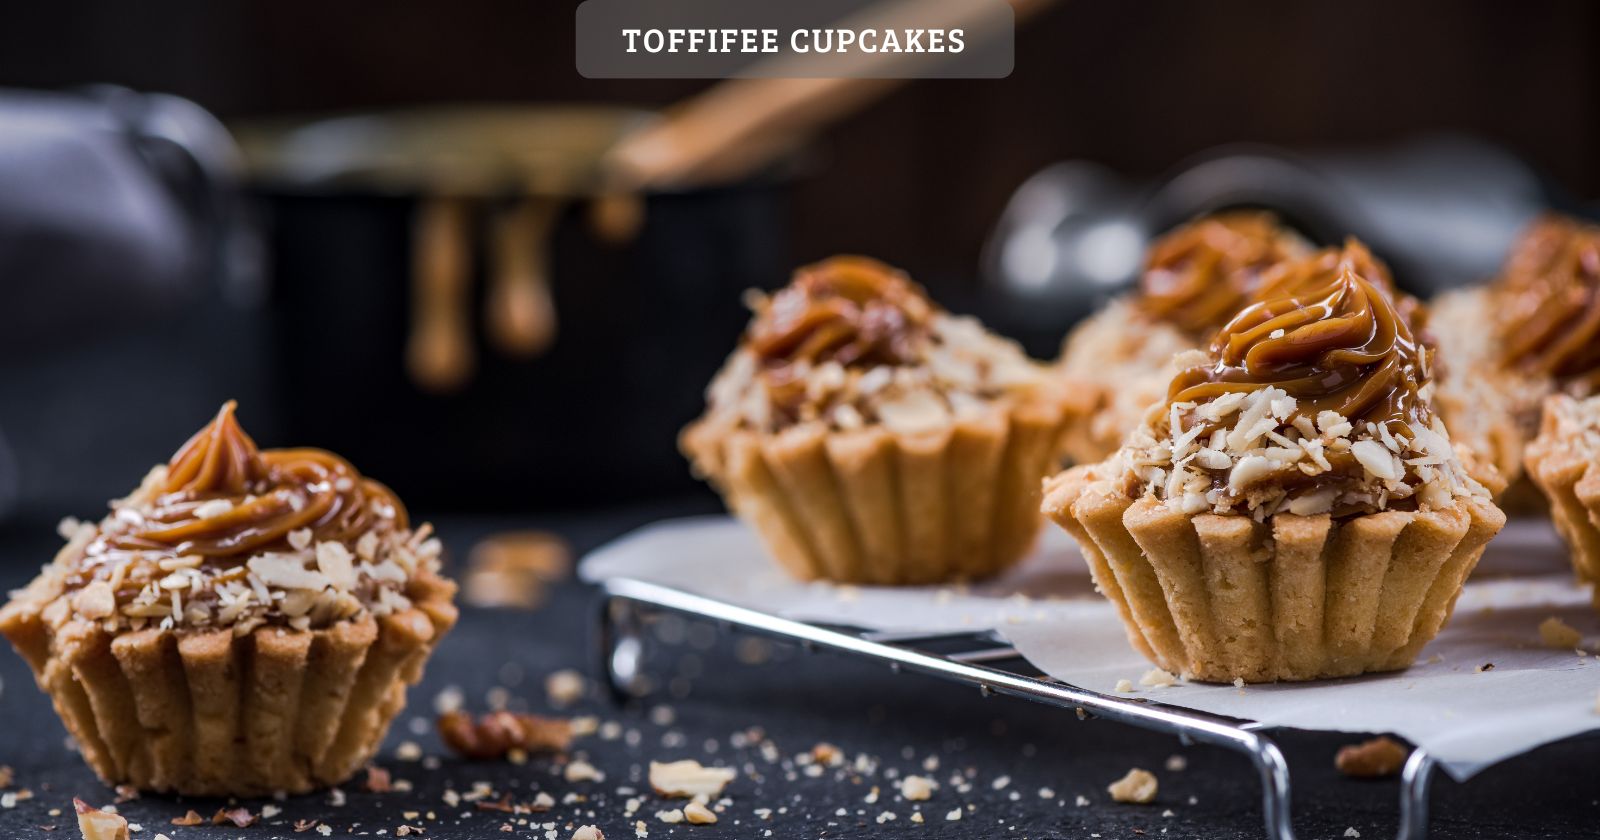 Toffifee cupcakes